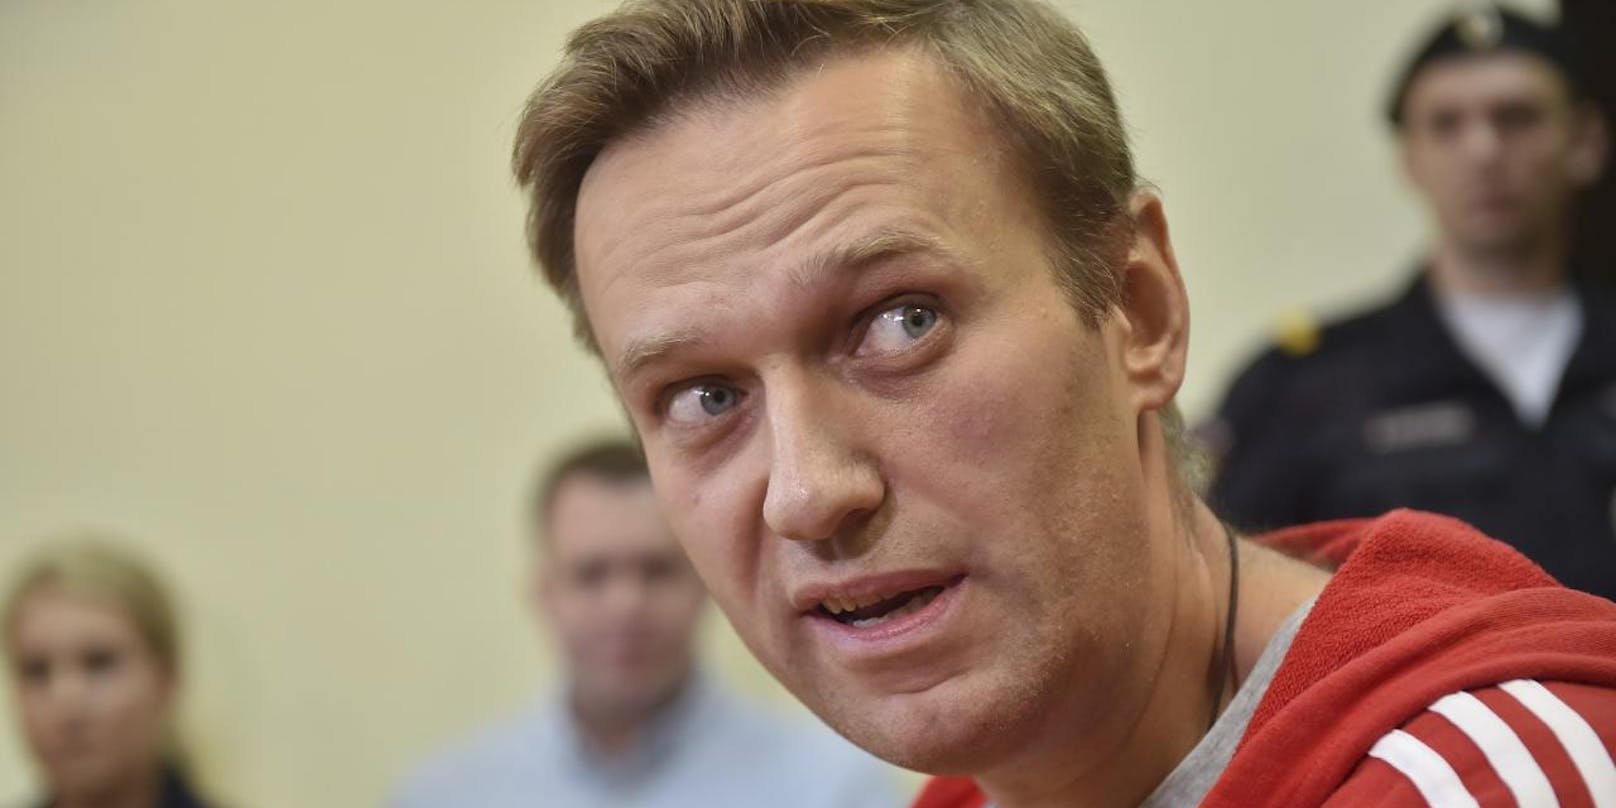 Kreml-Kritiker Alexej Nawalny hatte schon 2018 Probleme mit der russischen Regierung:
Der russische Oppositionsführer Alexej Nawalny wurde am 14. Juni 2018 nach dreißig Tagen in Haft wieder in die Freiheit entlassen.